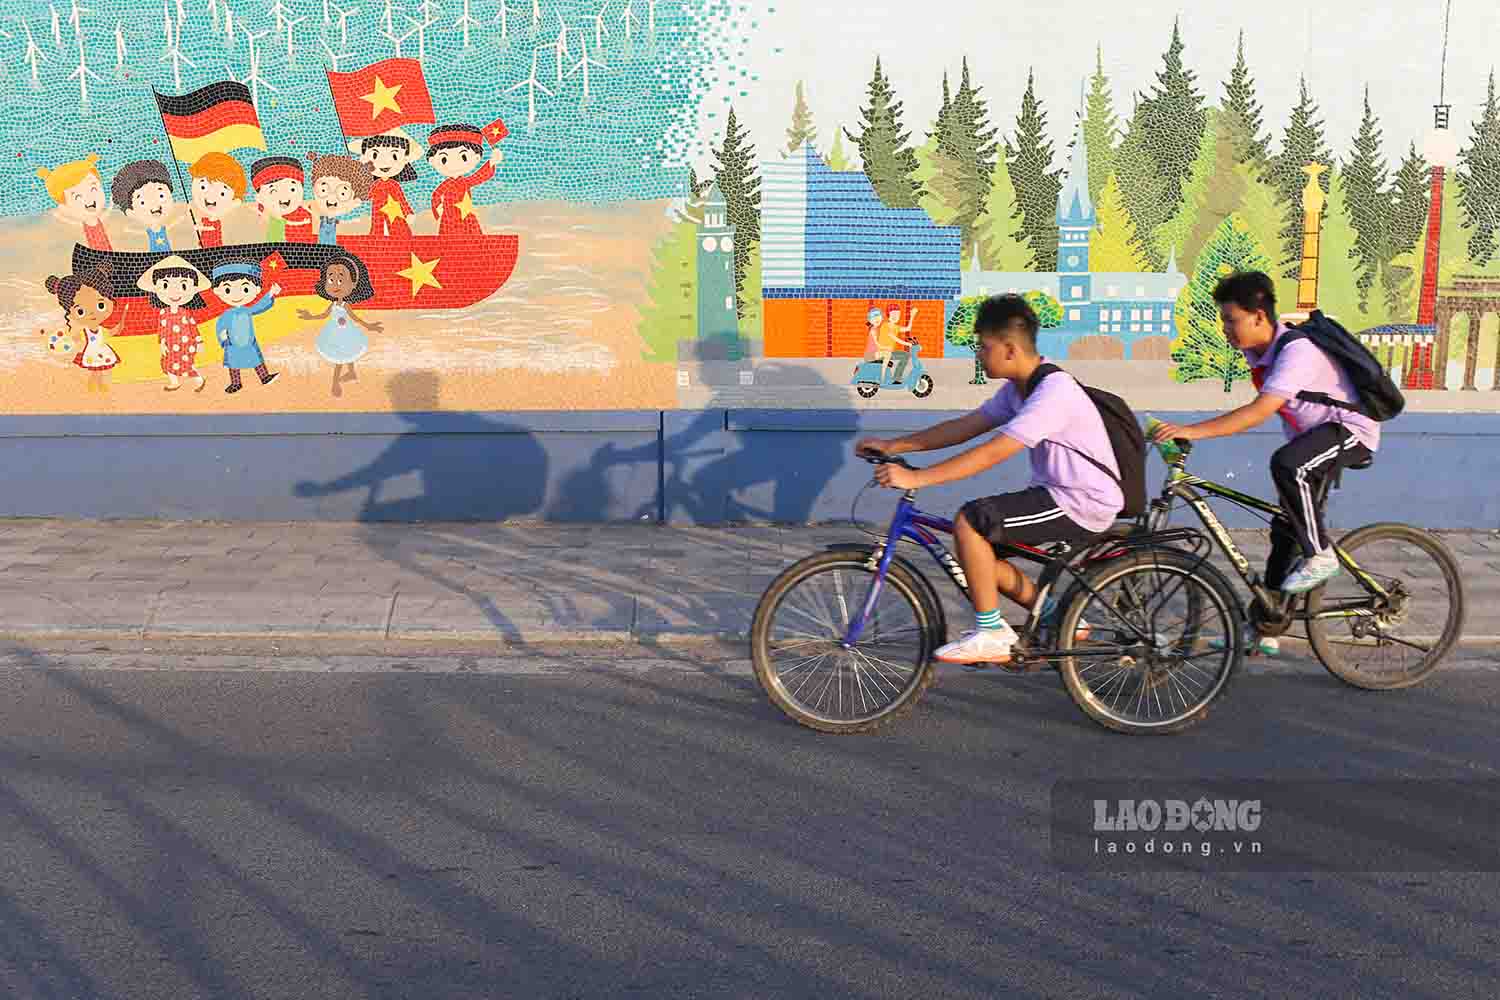 Trong kế hoạch chống ùn tắc 2022 – 2025 của thành phố Hà Nội có đề cập vấn đề sẽ có làn đường dành riêng cho xe đạp. Tuy nhiên hiện kế hoạch này mới chỉ dừng lại ở việc nghiên cứu.